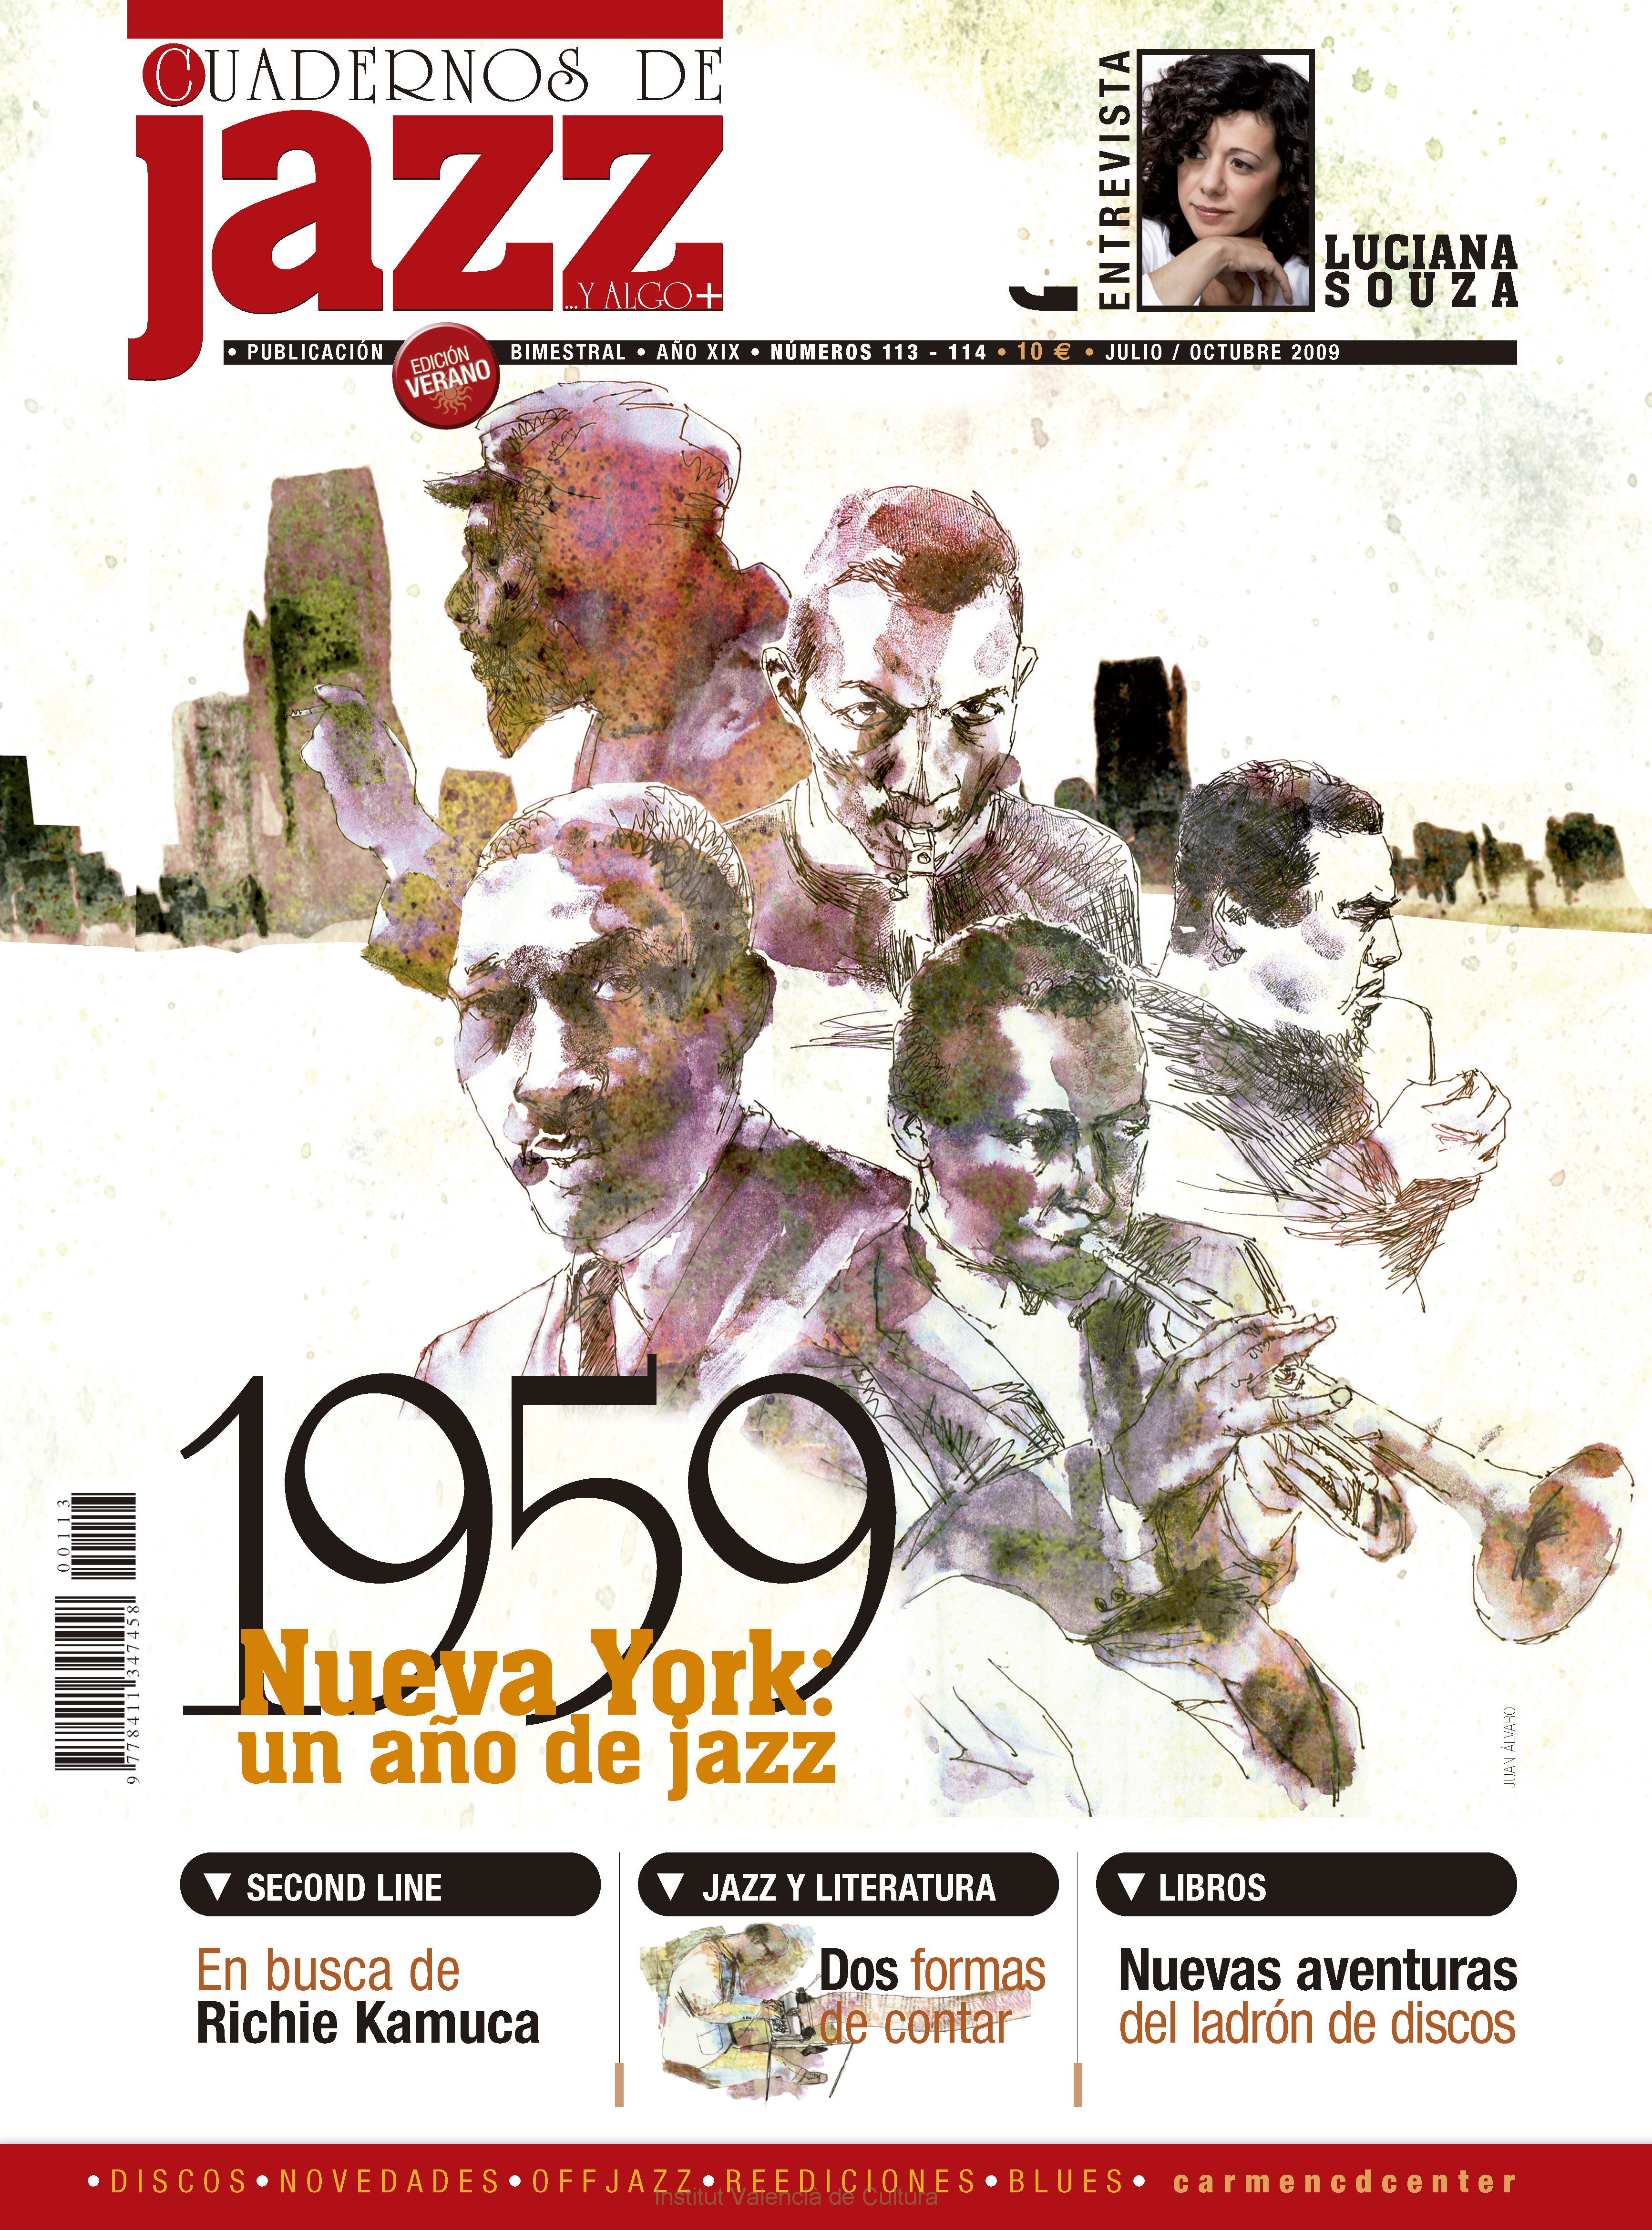 Cubierta del número 113-114 de la revista Cuadernos de Jazz